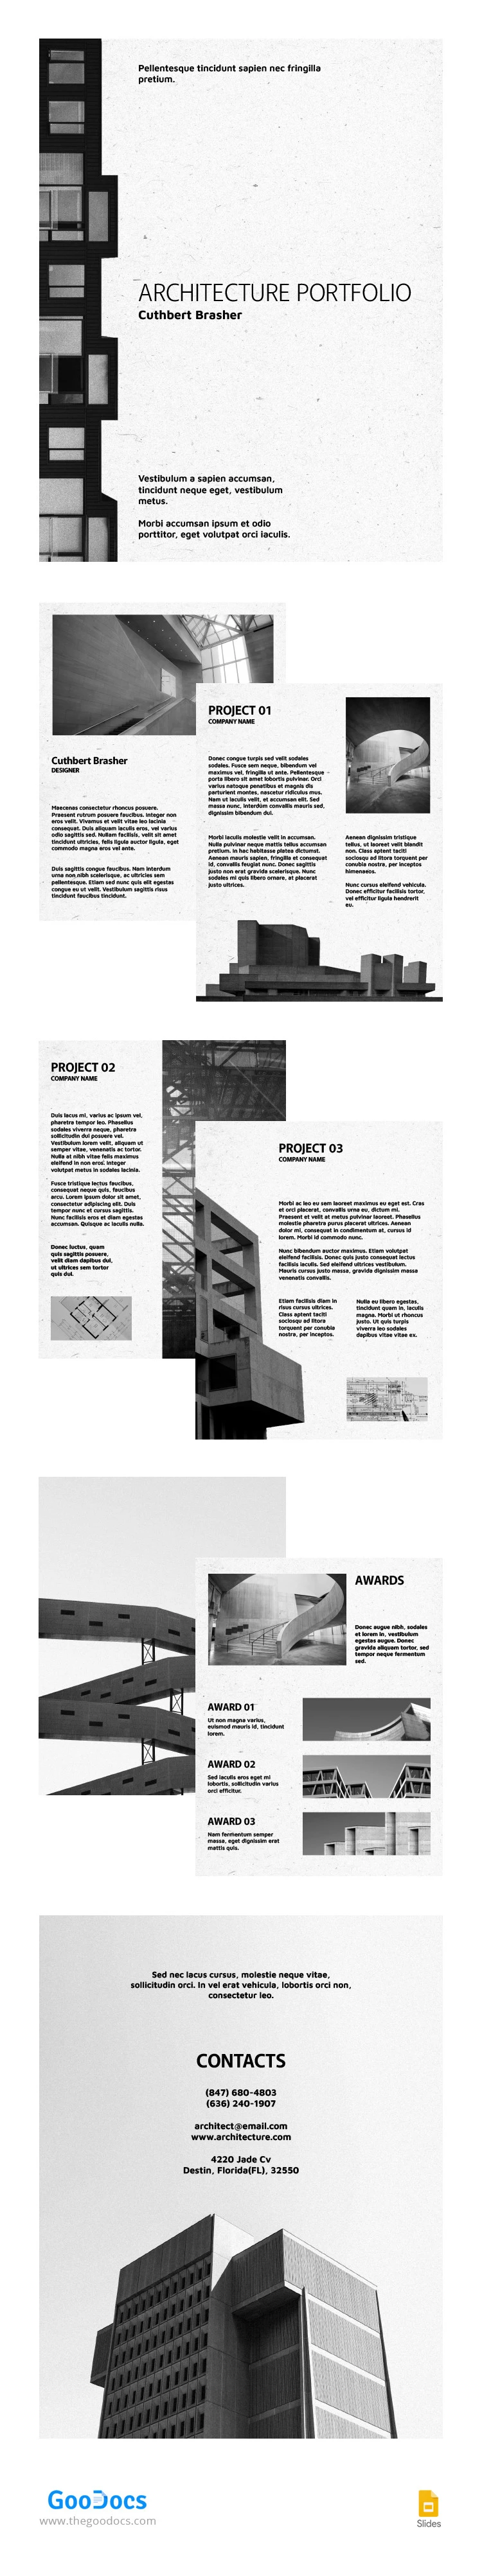 Portfólio de Arquitetura em Preto e Branco. - free Google Docs Template - 10065449